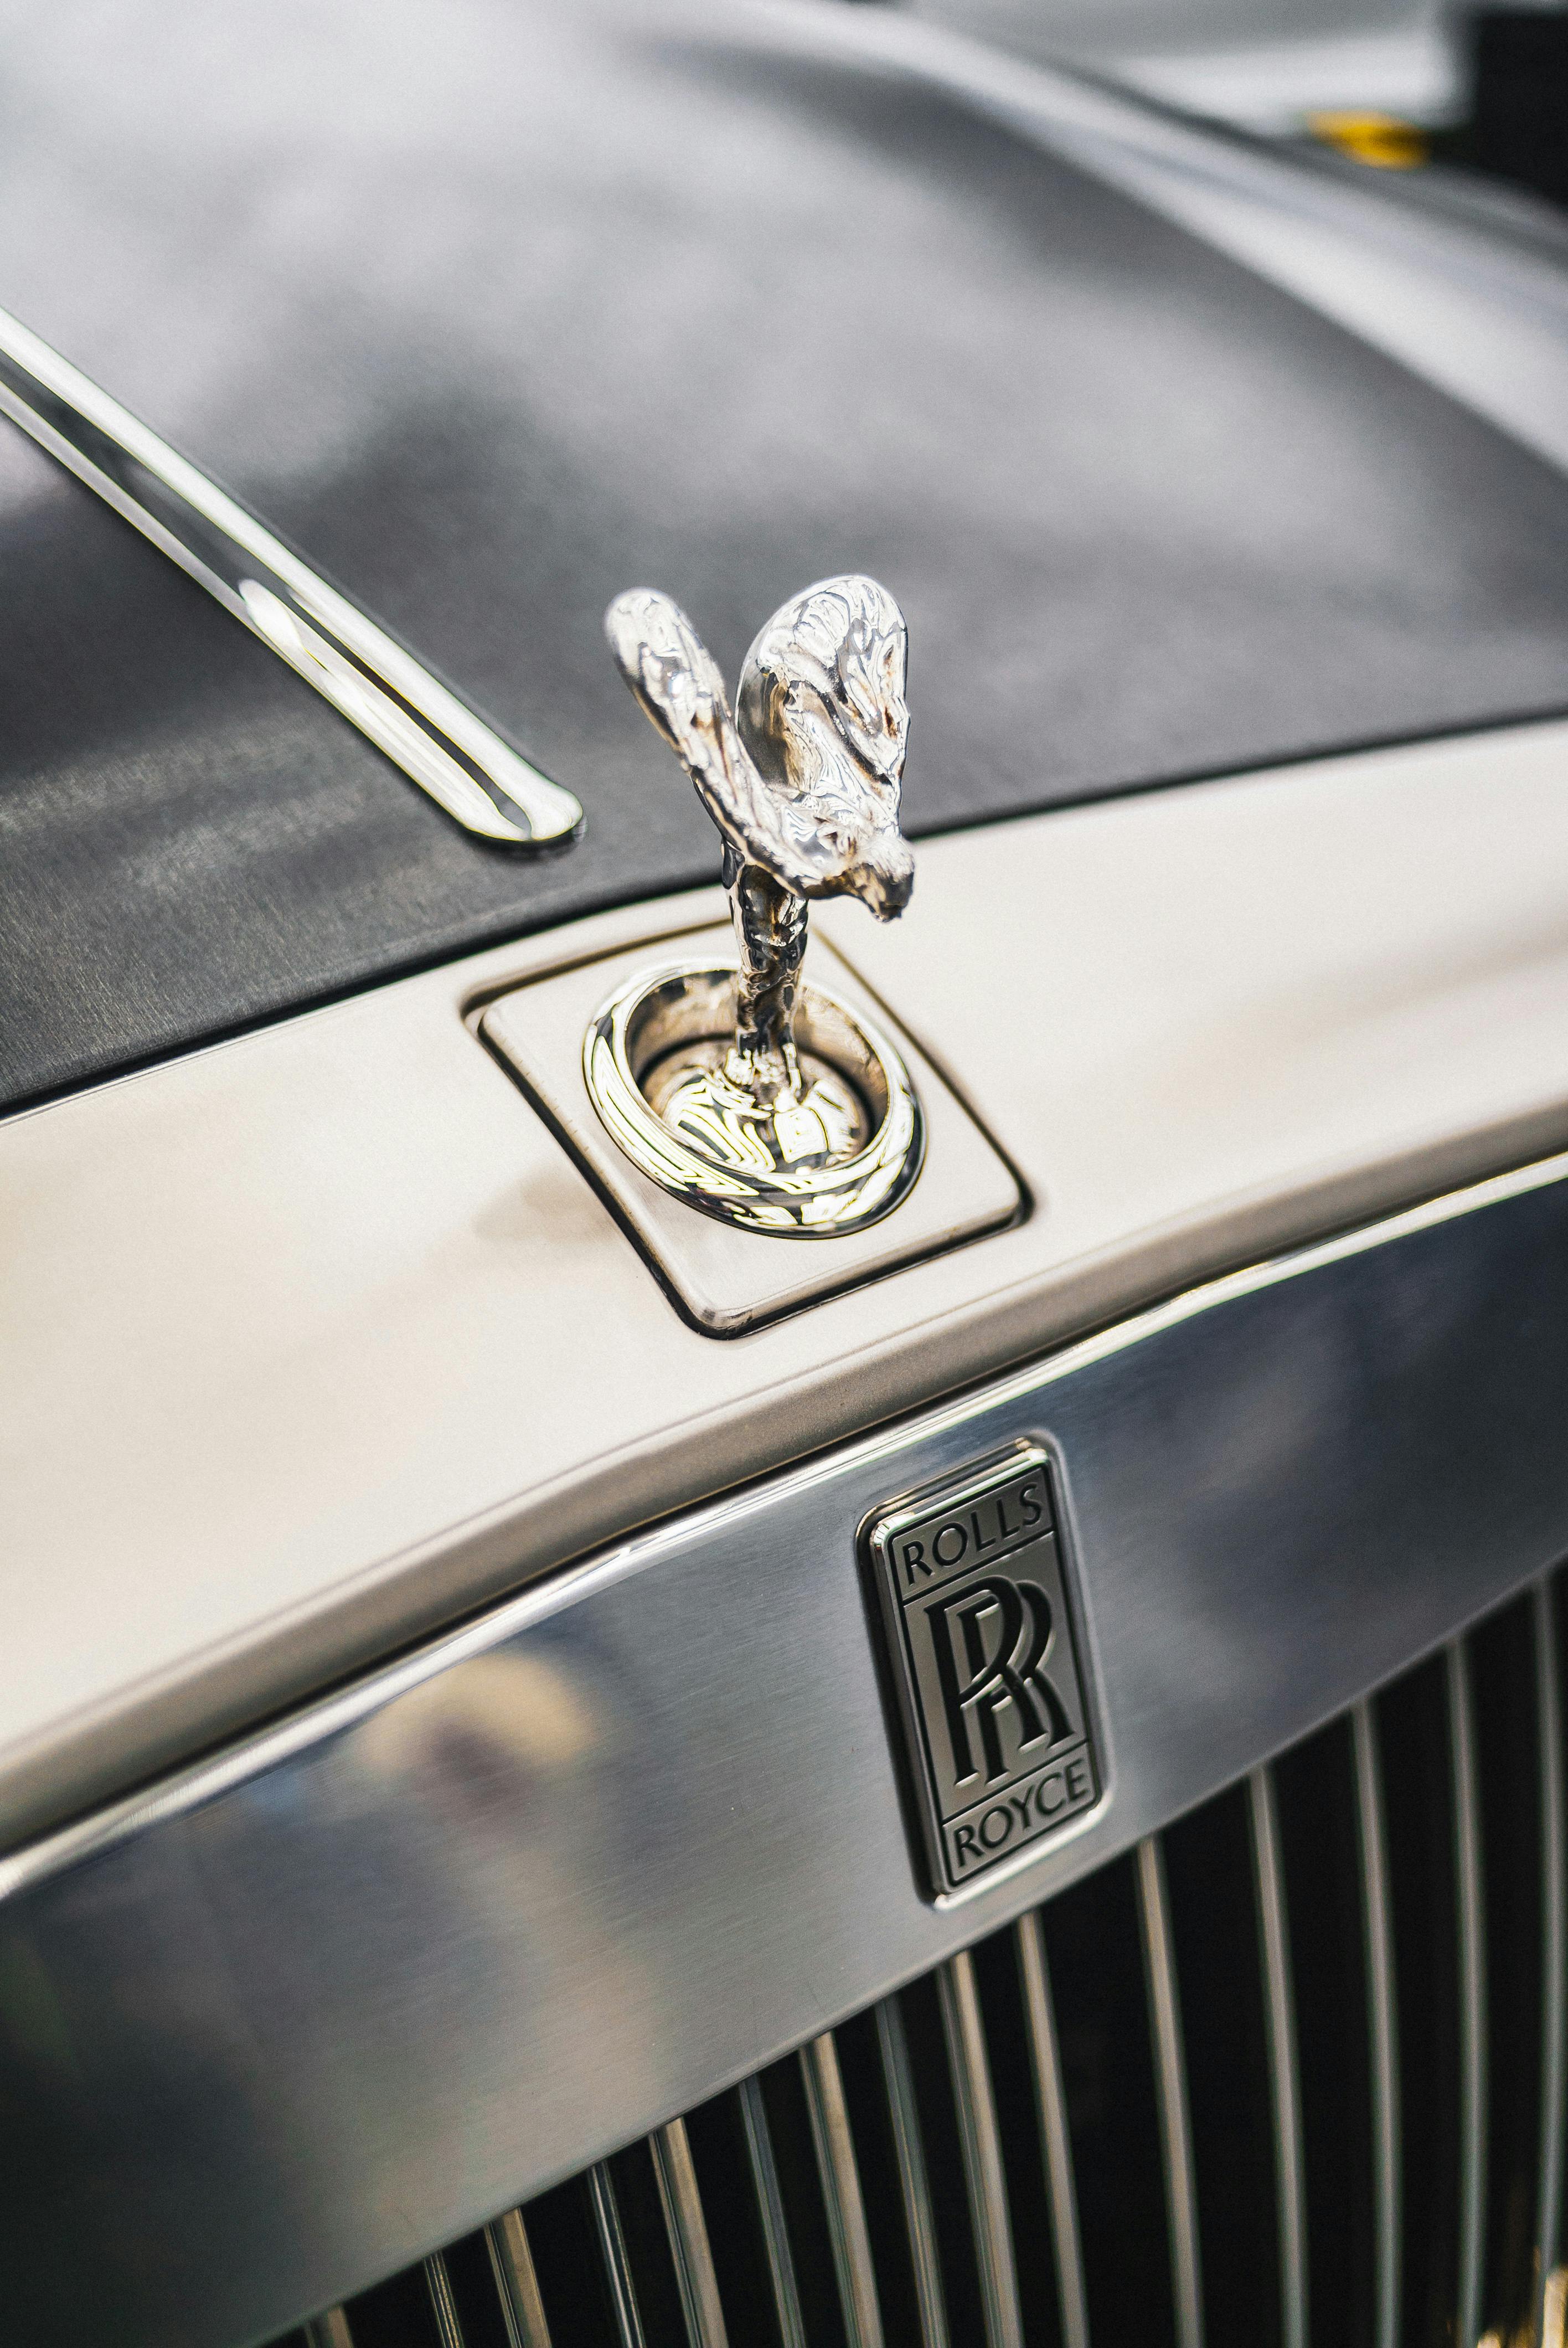 Lot 26  Rolls Royce kneeling lady mascot